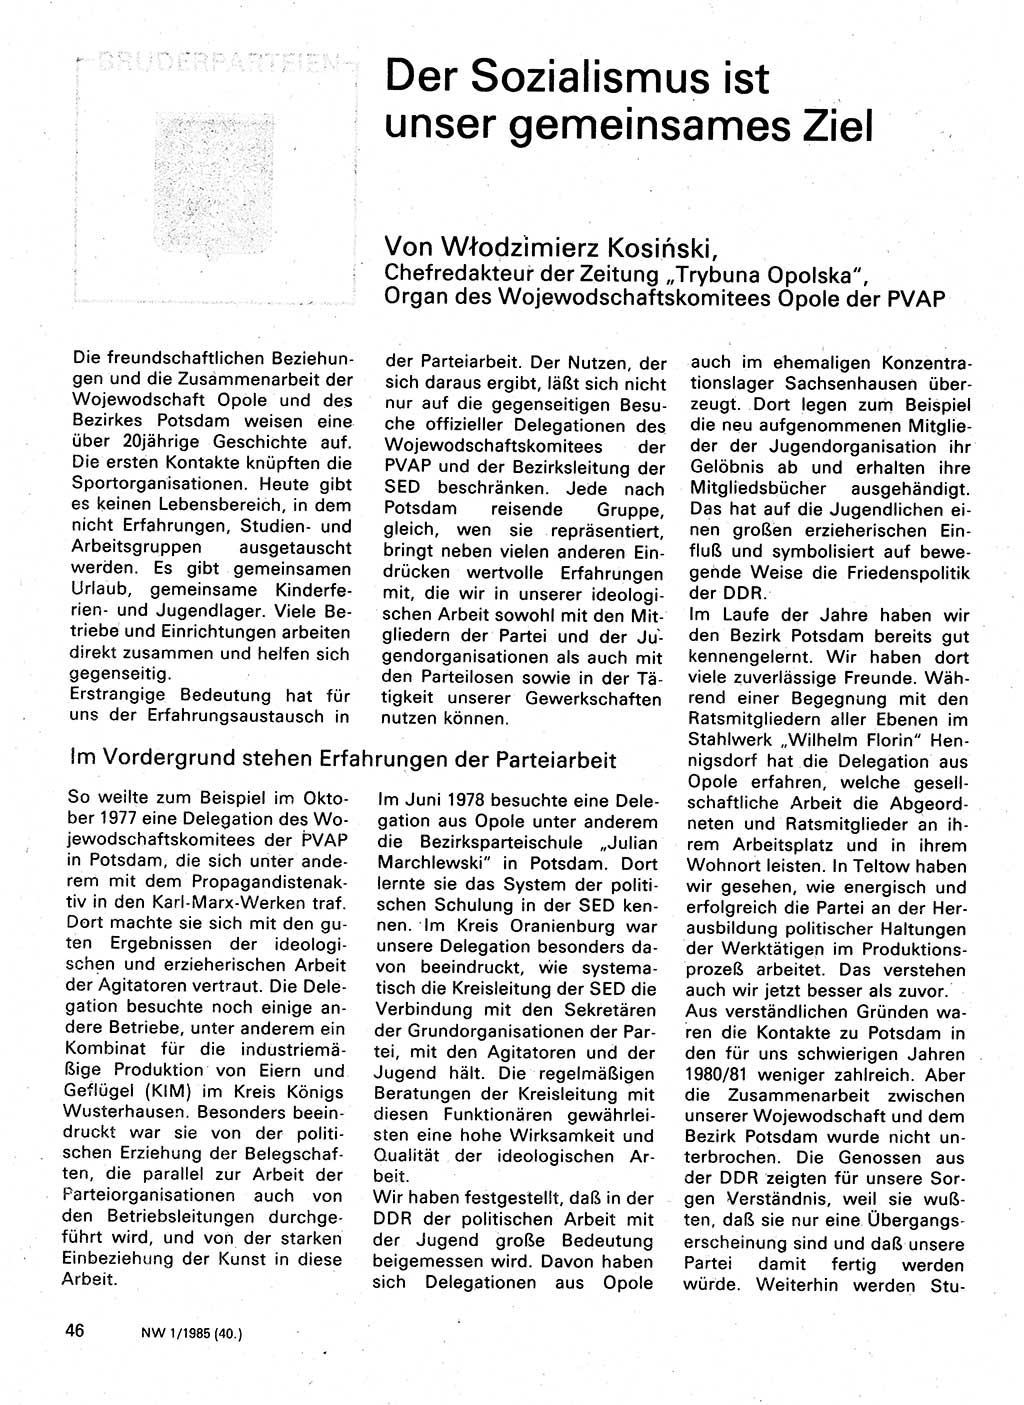 Neuer Weg (NW), Organ des Zentralkomitees (ZK) der SED (Sozialistische Einheitspartei Deutschlands) für Fragen des Parteilebens, 40. Jahrgang [Deutsche Demokratische Republik (DDR)] 1985, Seite 46 (NW ZK SED DDR 1985, S. 46)